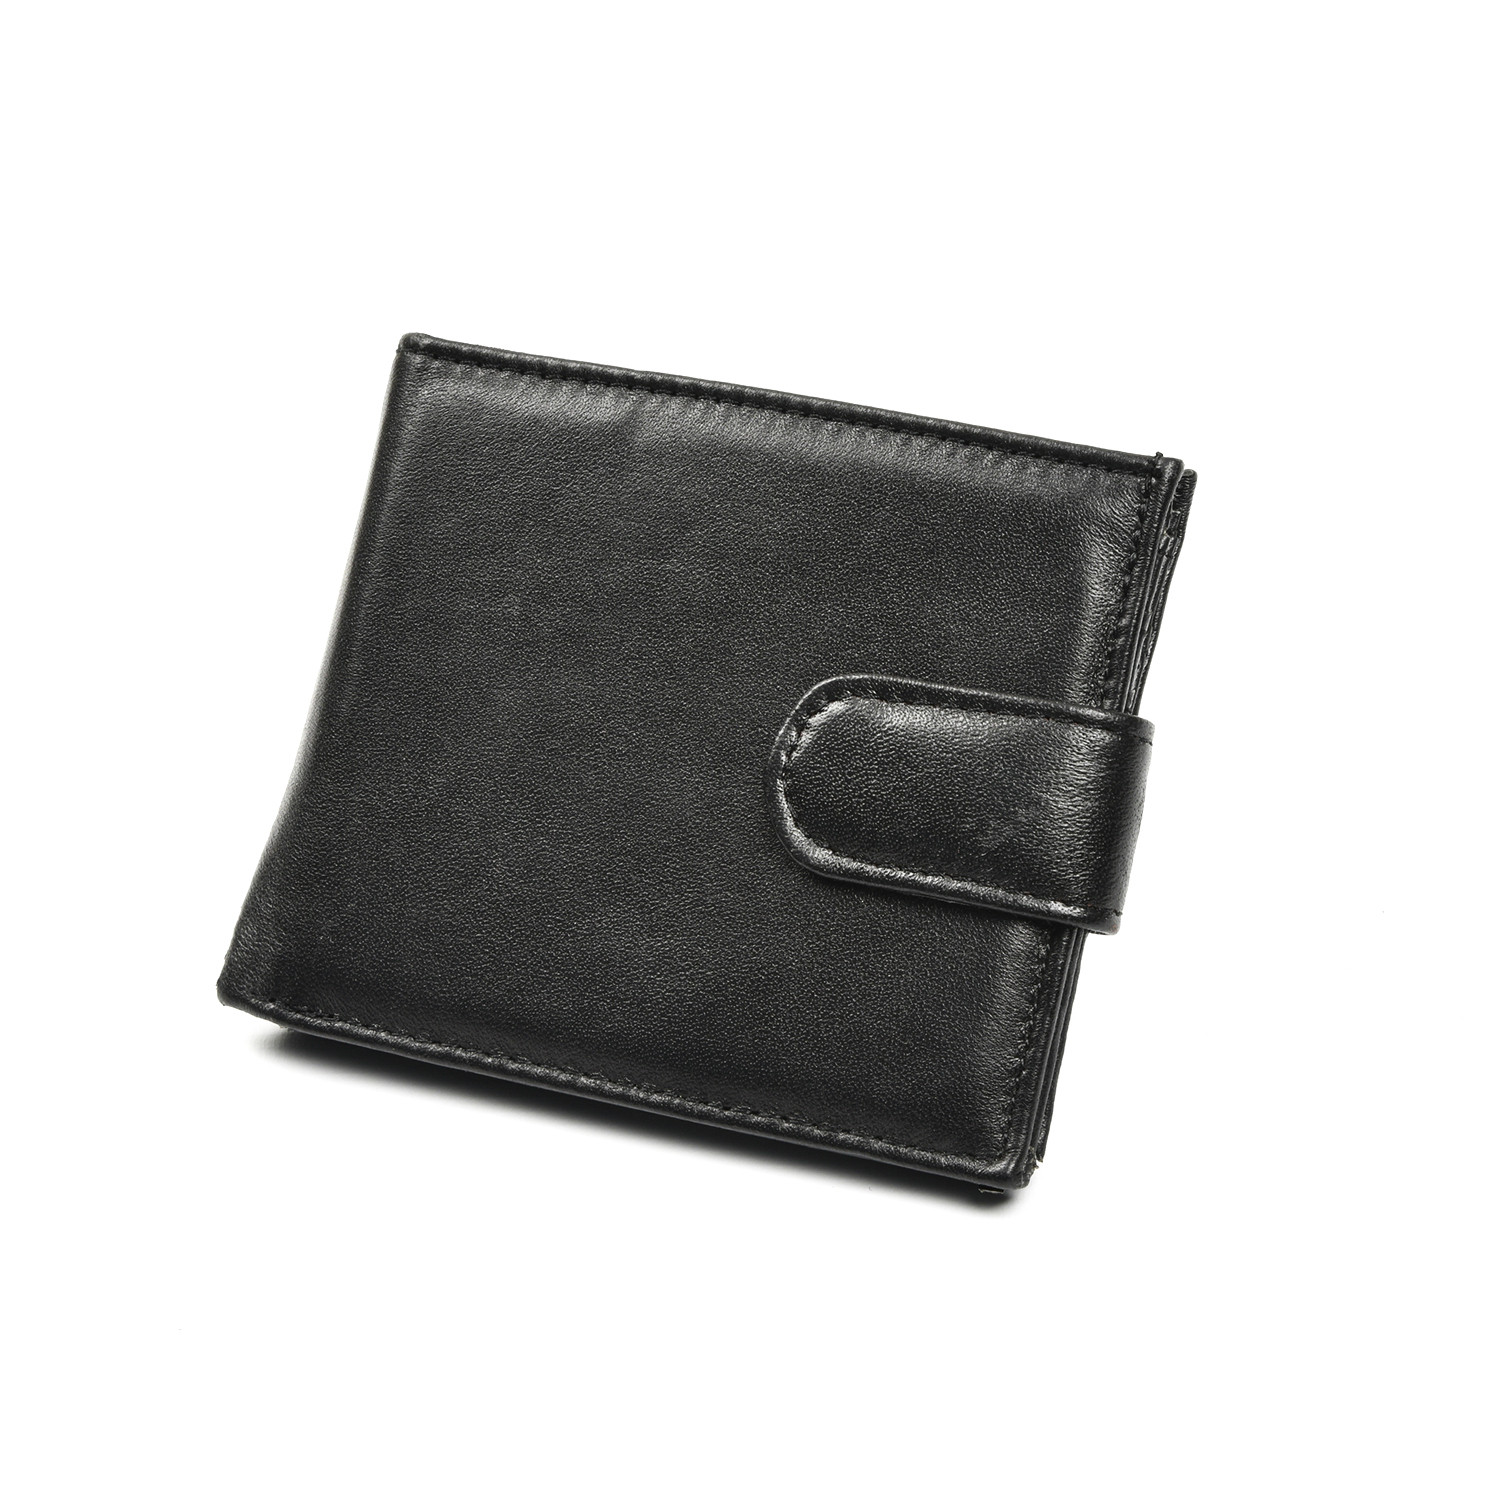 Black Leather Wallet - Black Image 1